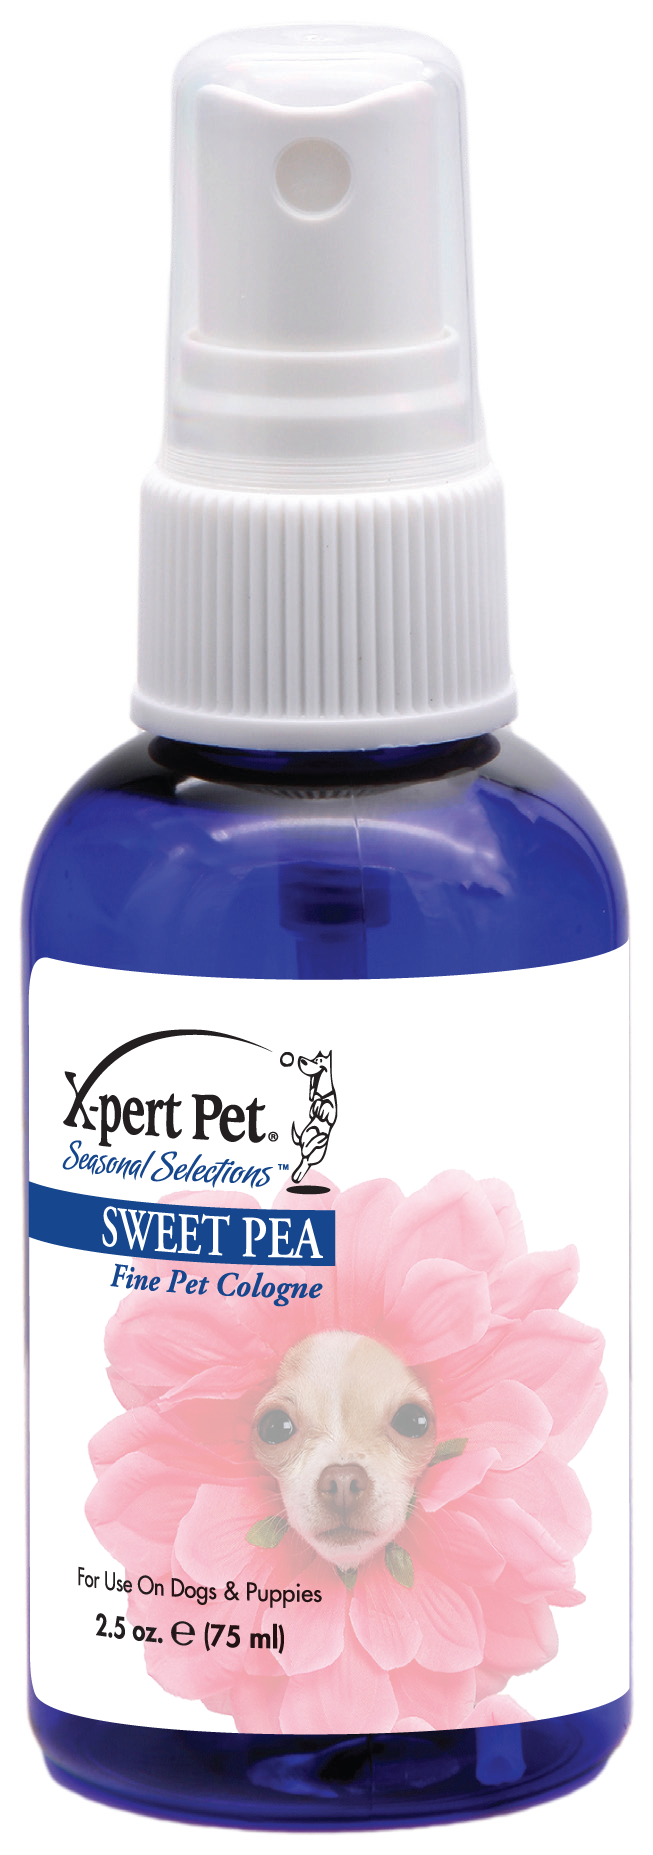 Sweet Pea Pet Cologne